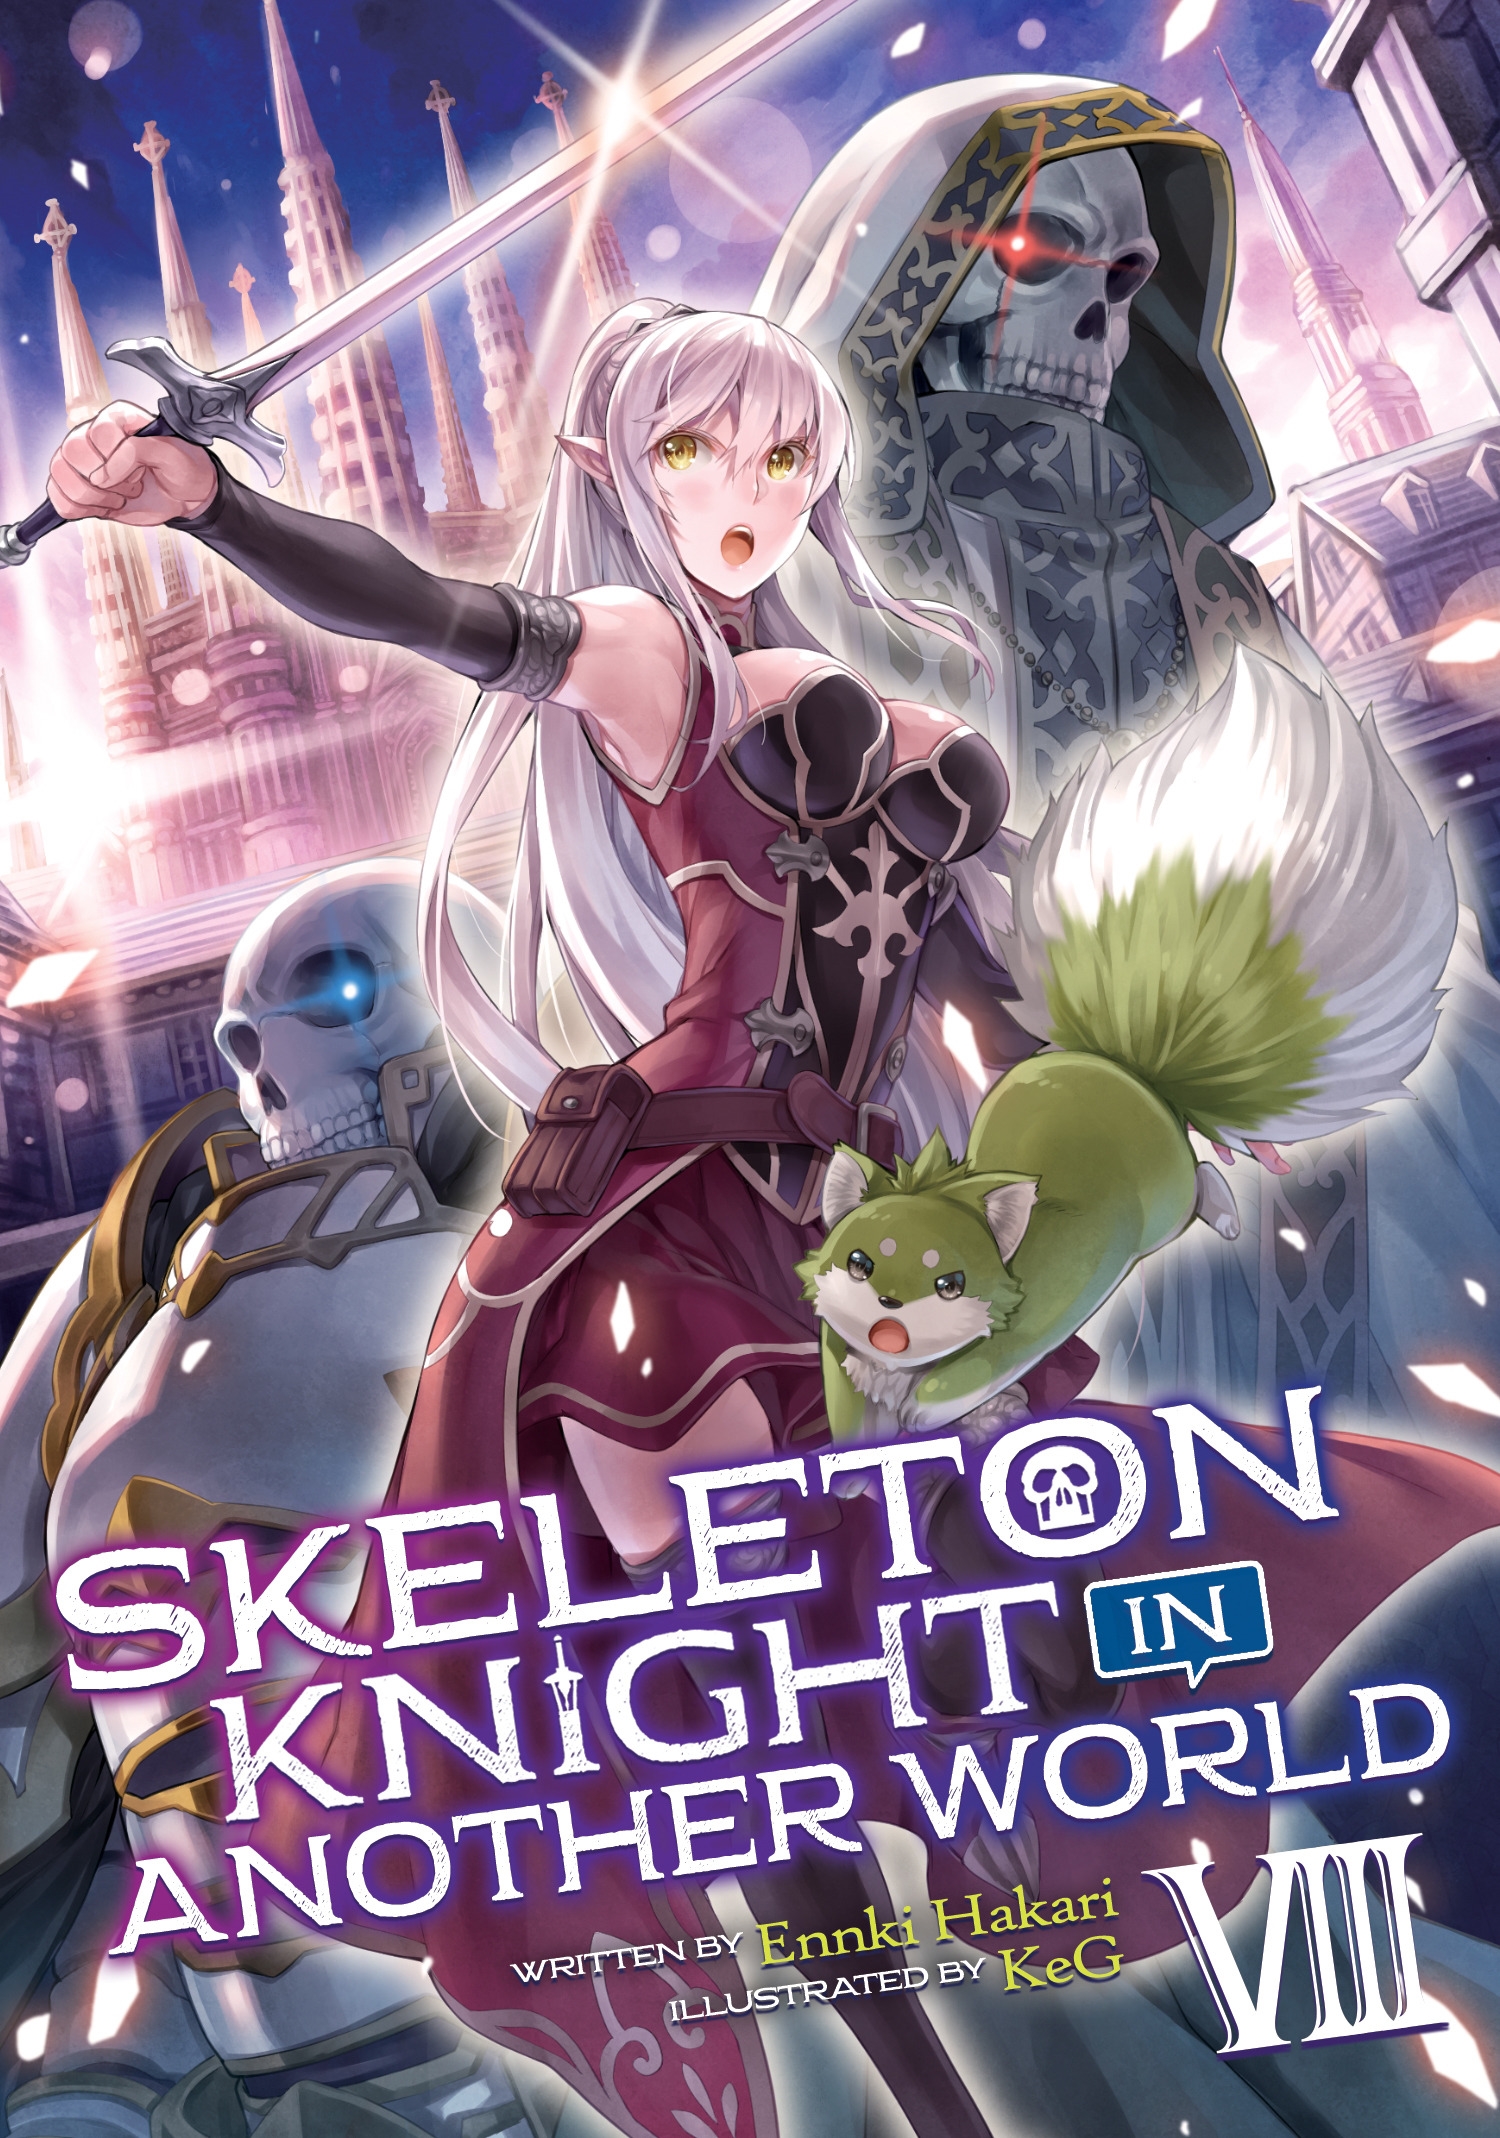 Skeleton Knight In Another World Light Novel Vol 8 By Ennki Hakari